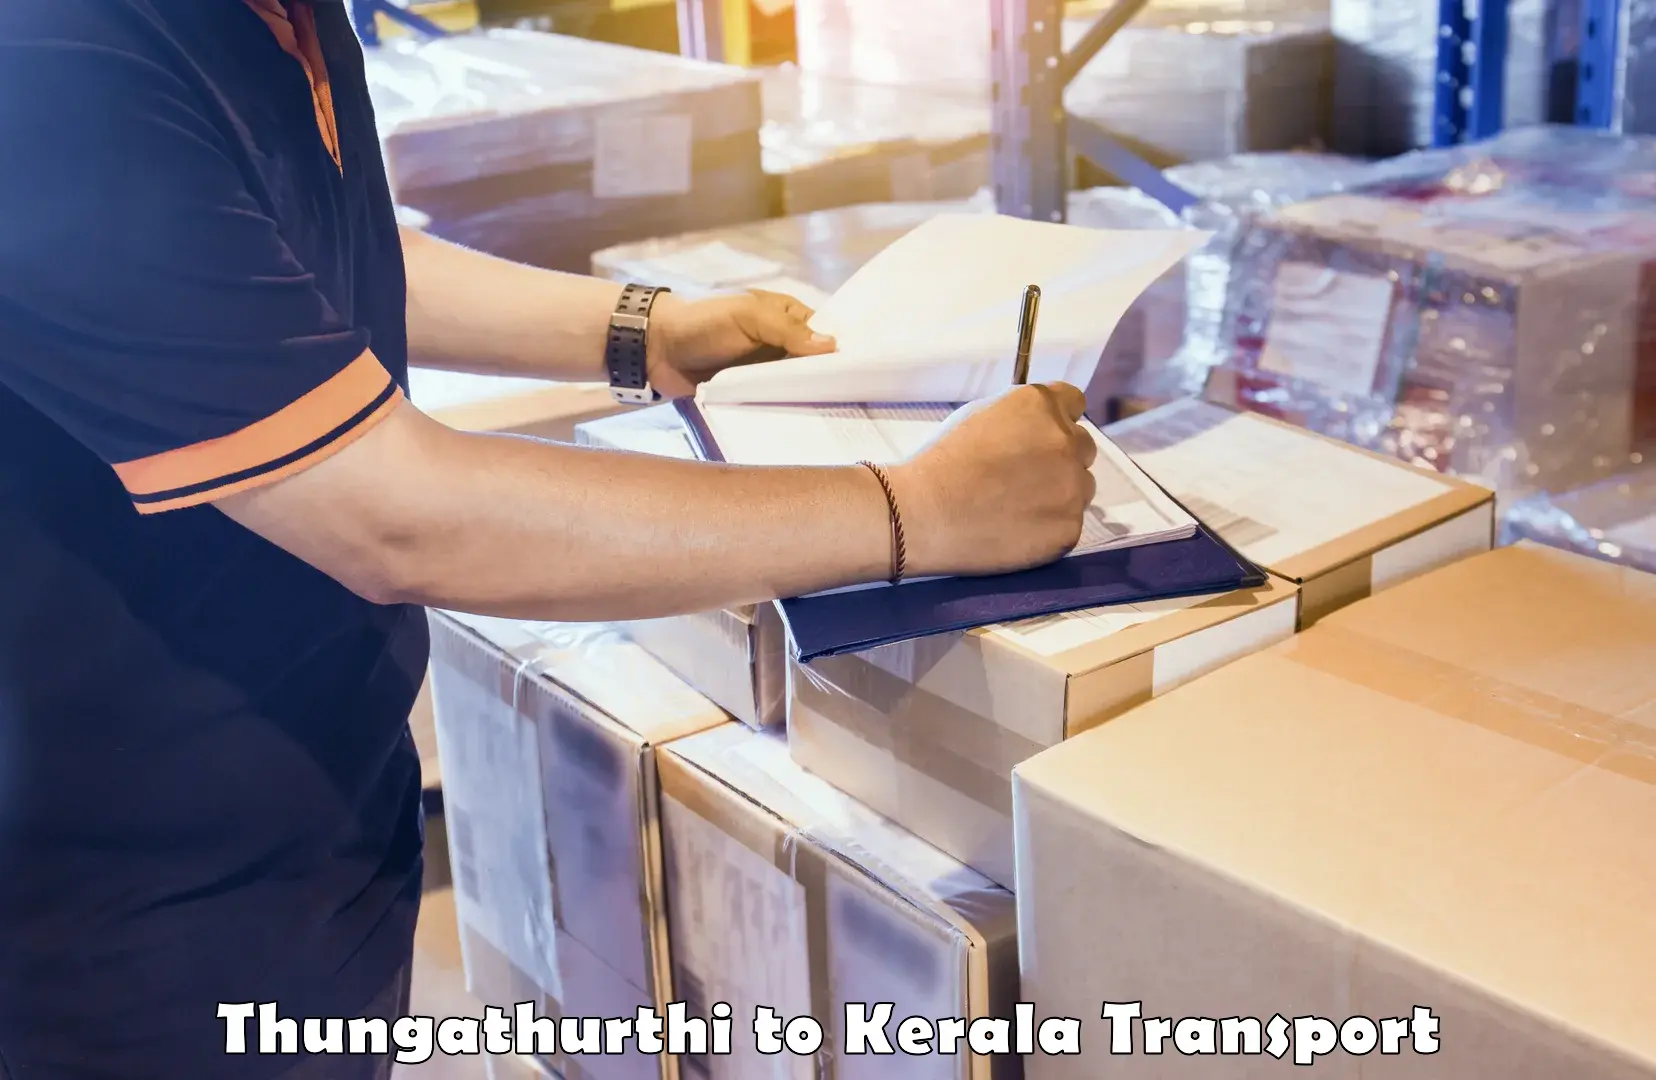 Container transportation services Thungathurthi to Manjeshwar